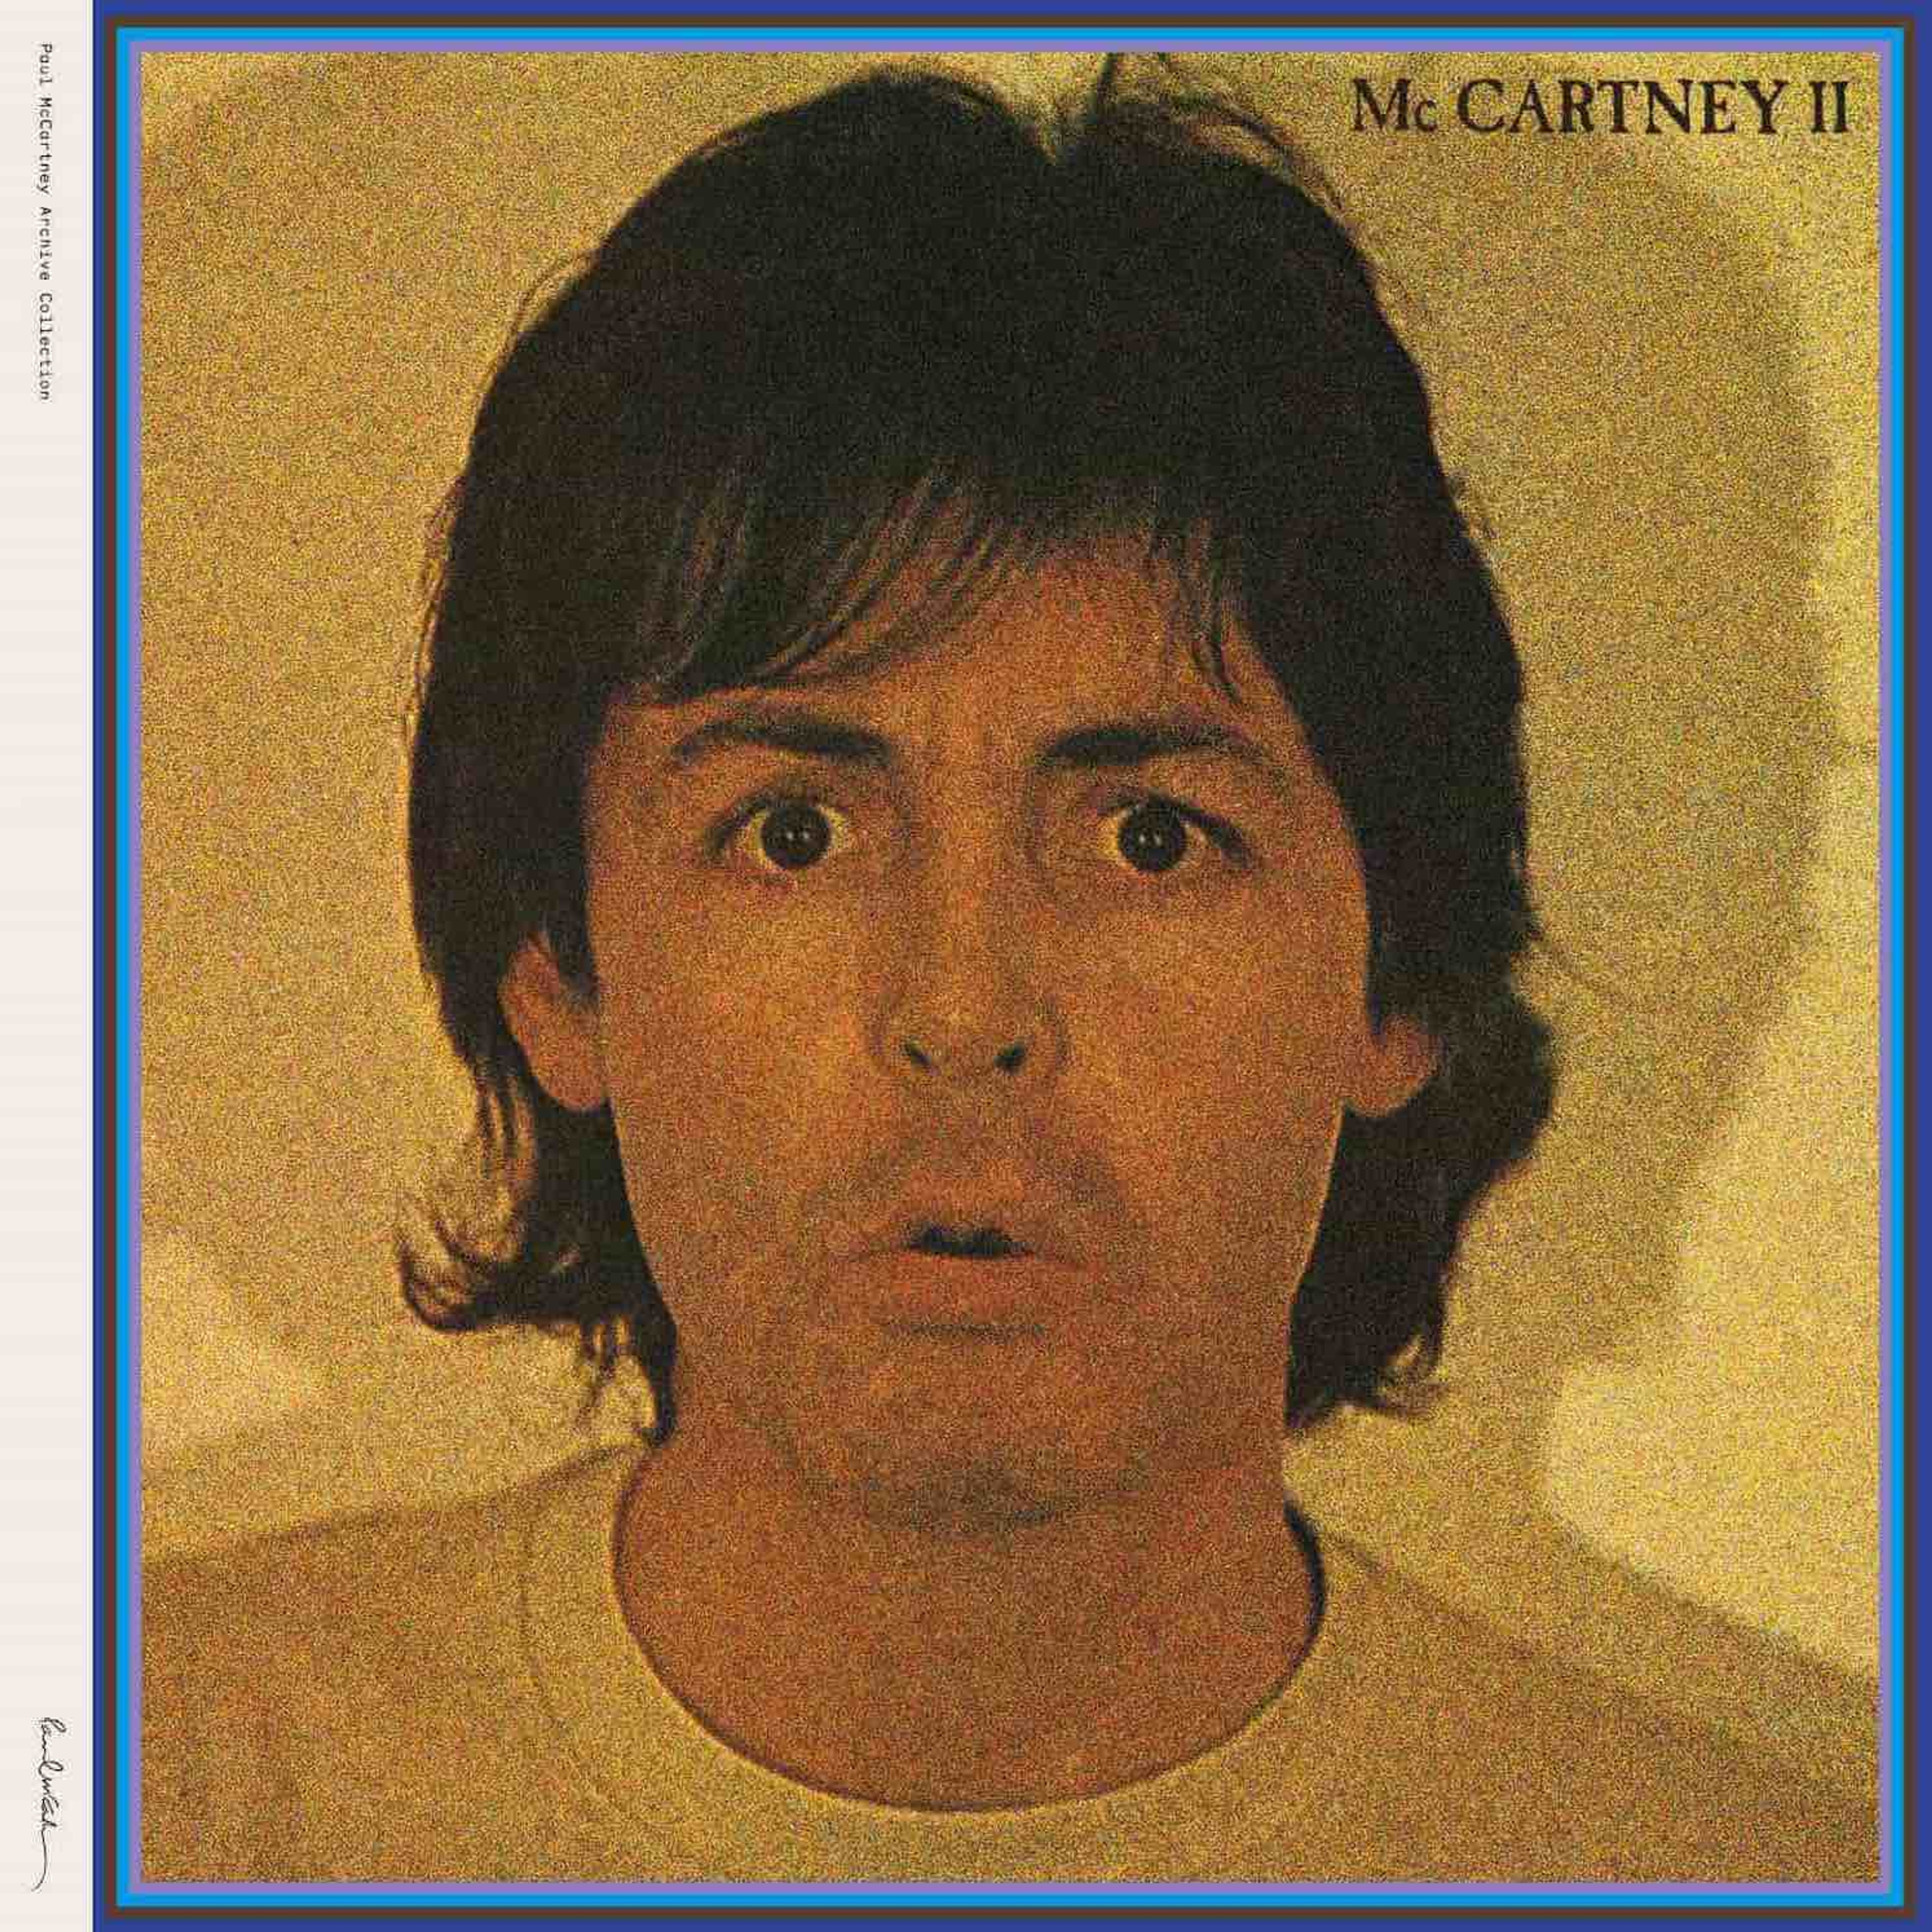 Album Sleeve for 'McCartney II'